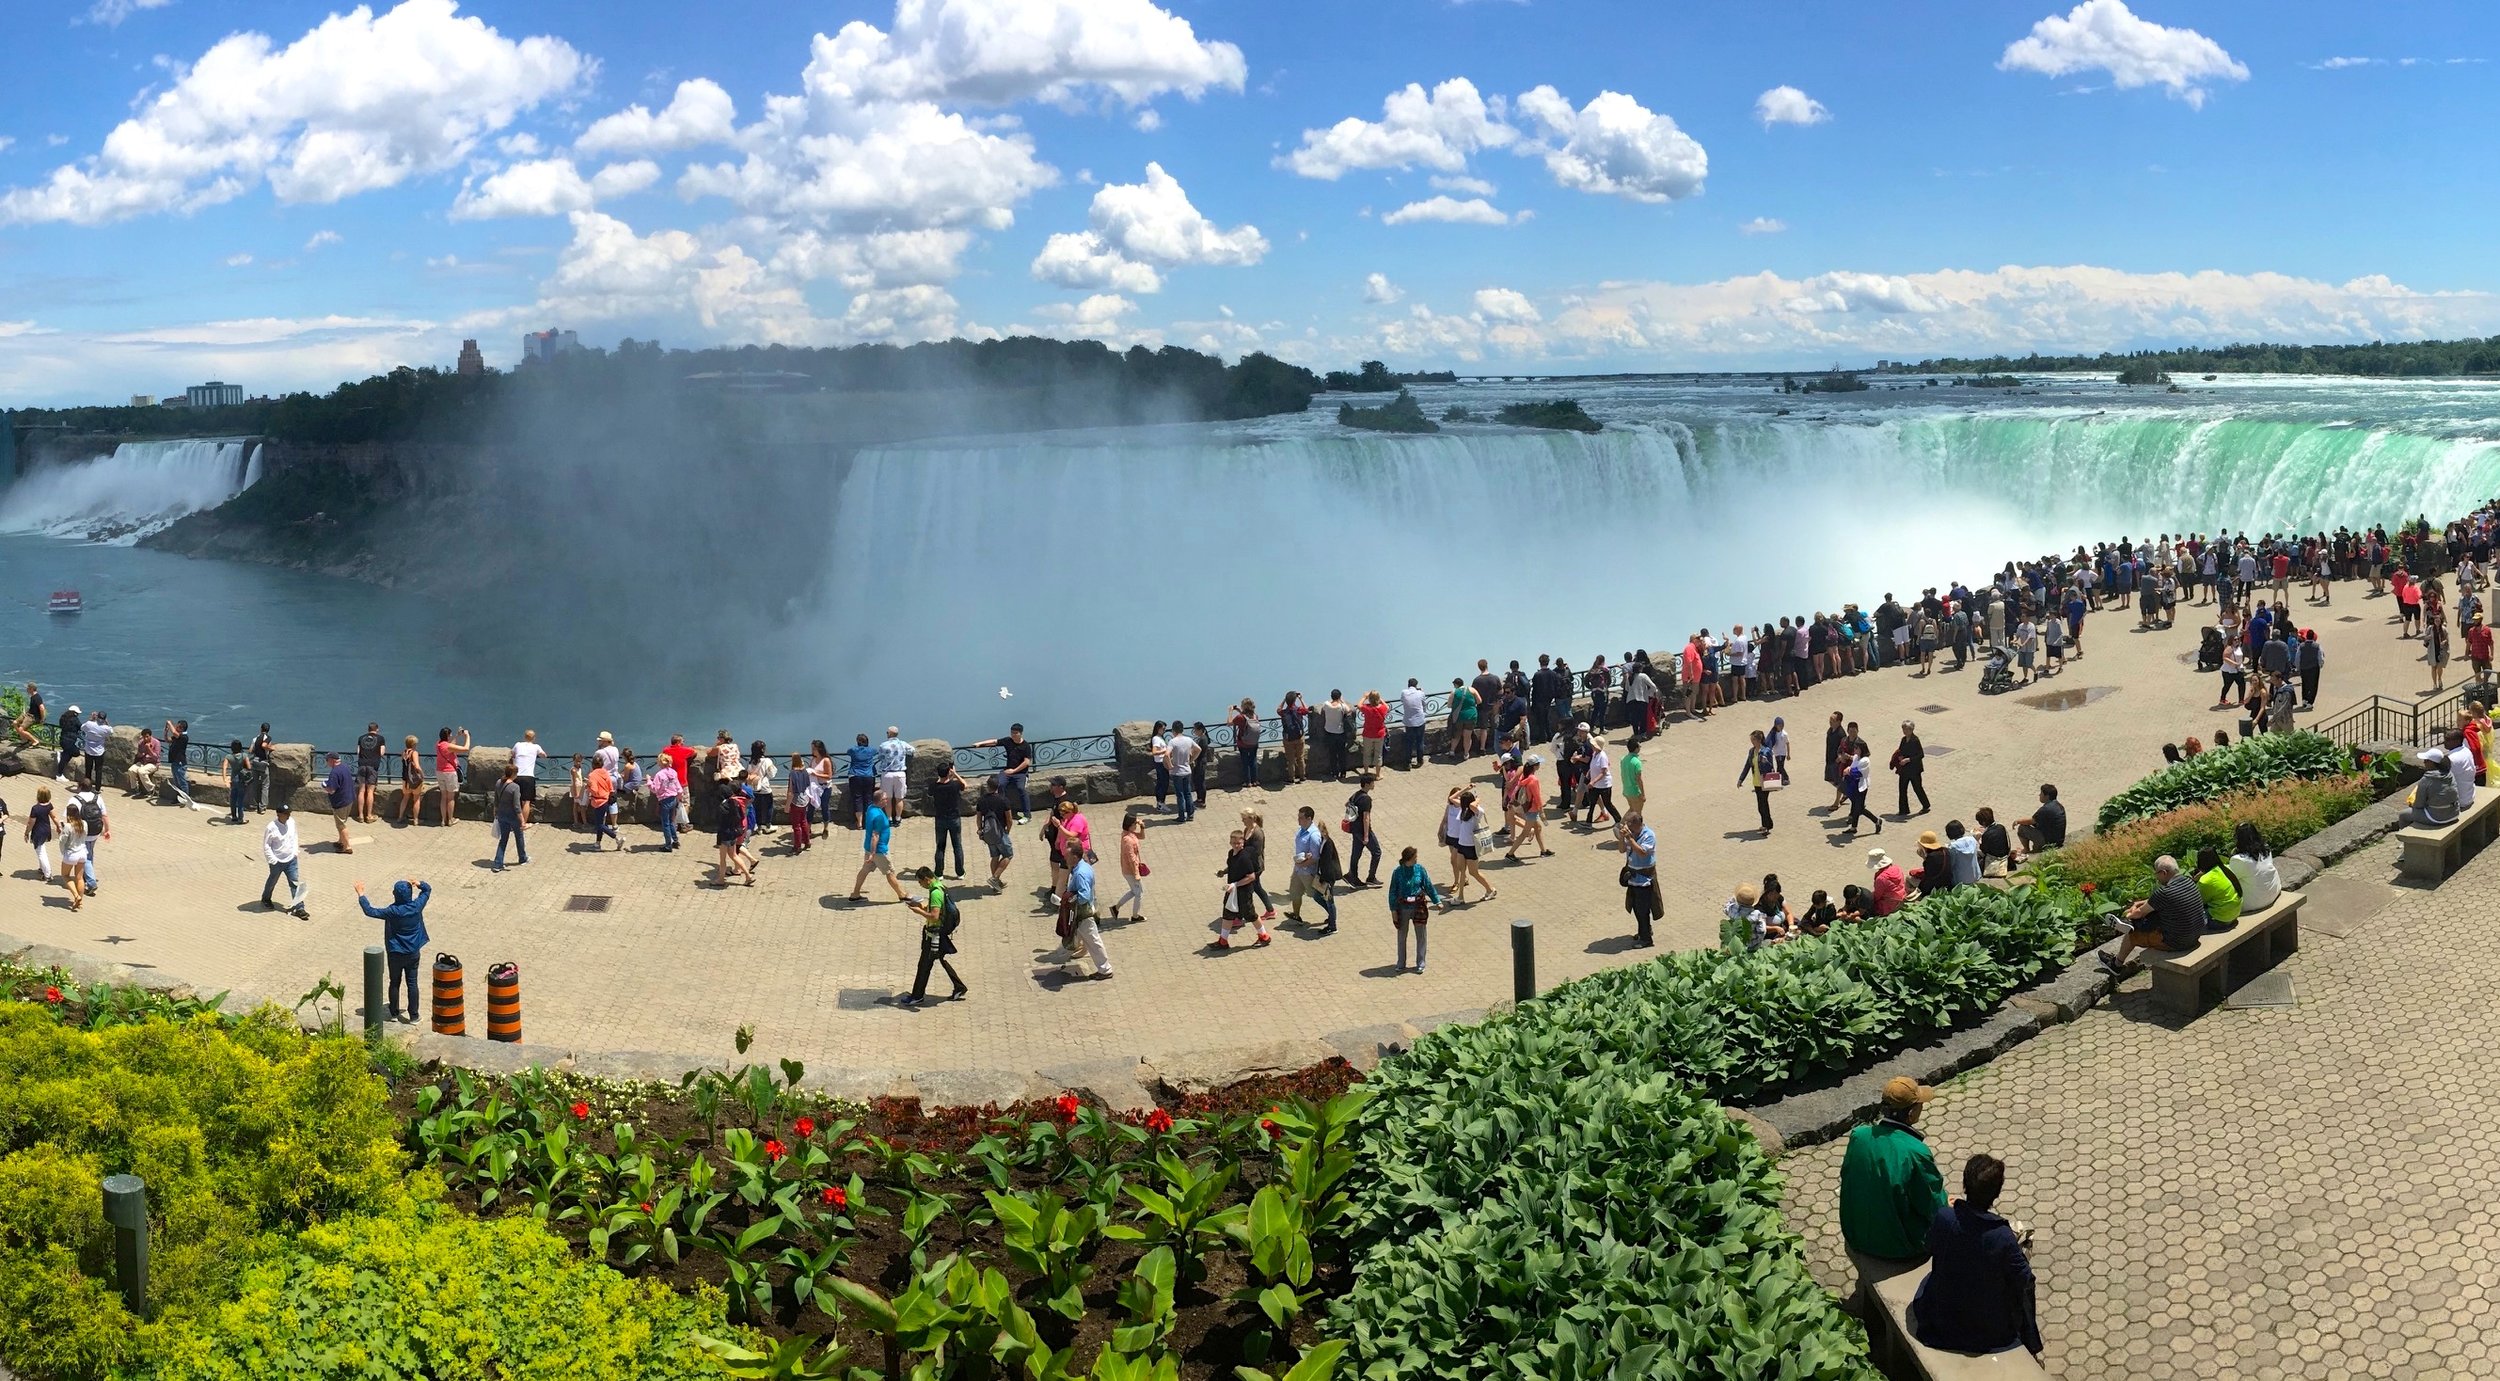 The USA vs Canada Experience at Niagara Falls